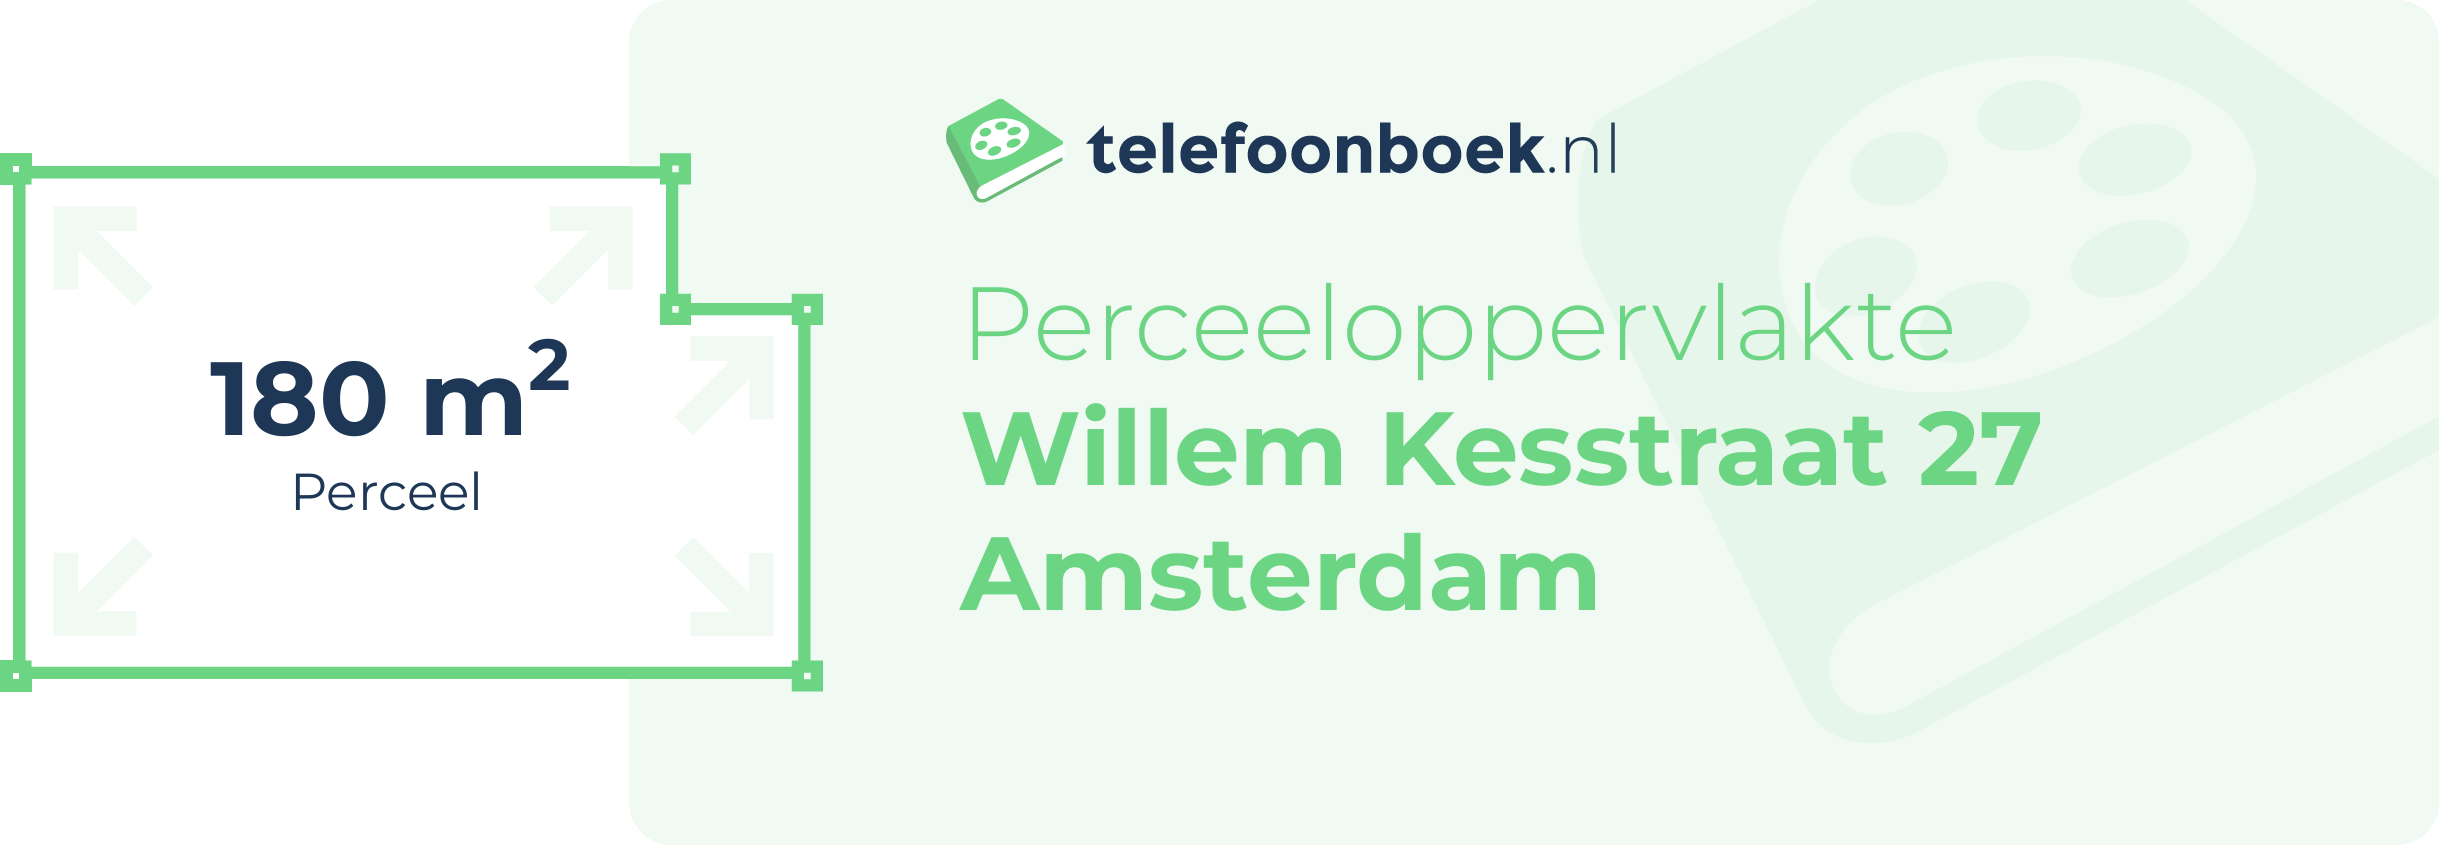 Perceeloppervlakte Willem Kesstraat 27 Amsterdam